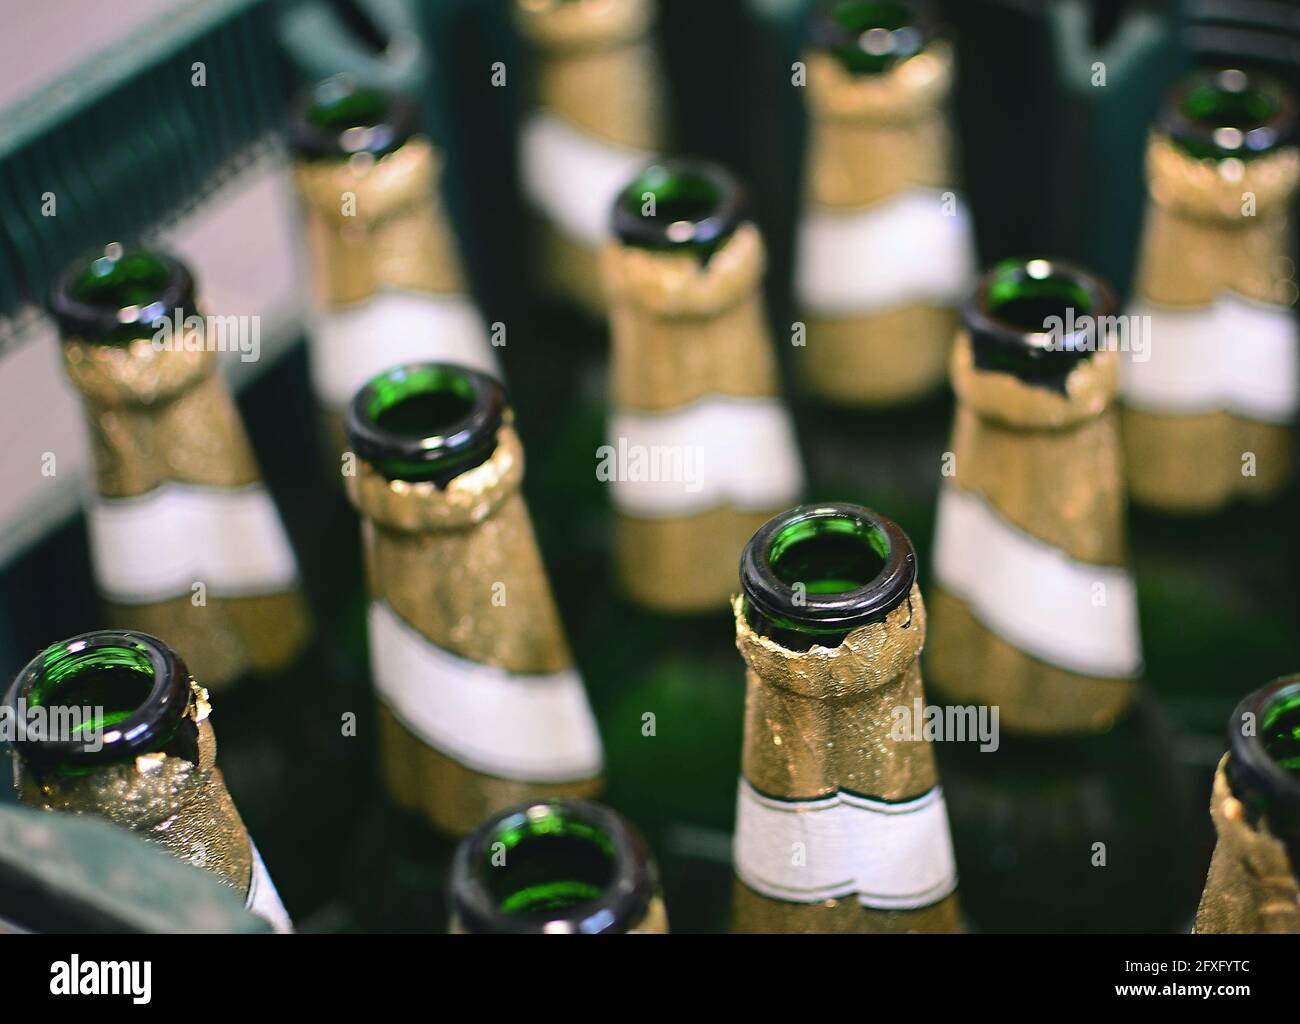 Vue de dessus des bouteilles de bière vertes vides dans la caisse. Recyclage des bouteilles de bière en verre vides. Banque D'Images